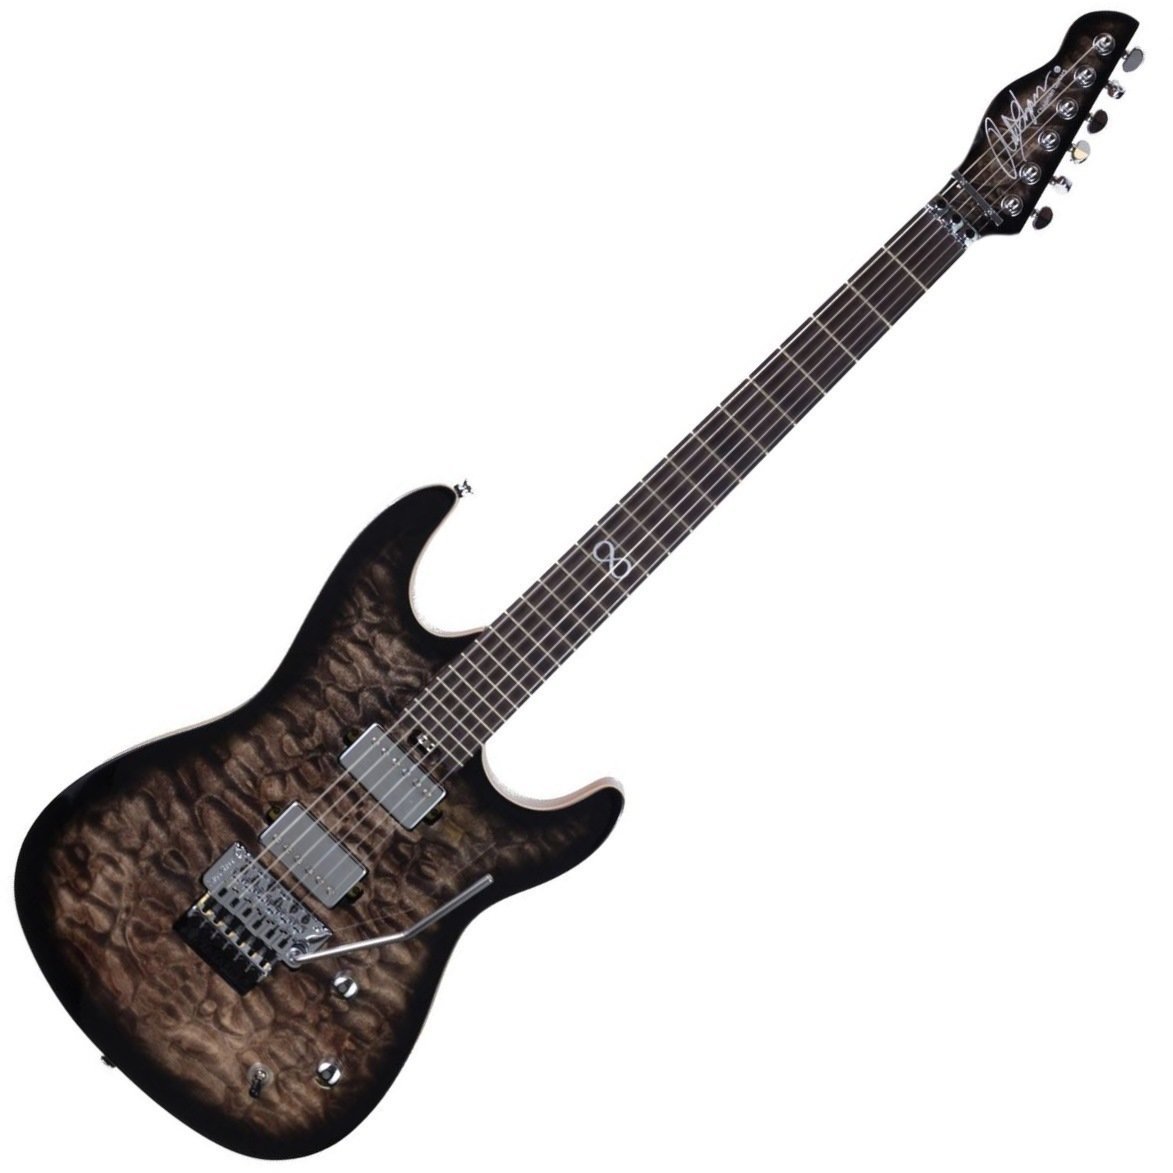 Ηλεκτρική Κιθάρα Chapman Guitars ML-1 Norseman Midgardsormen Svart (Black)